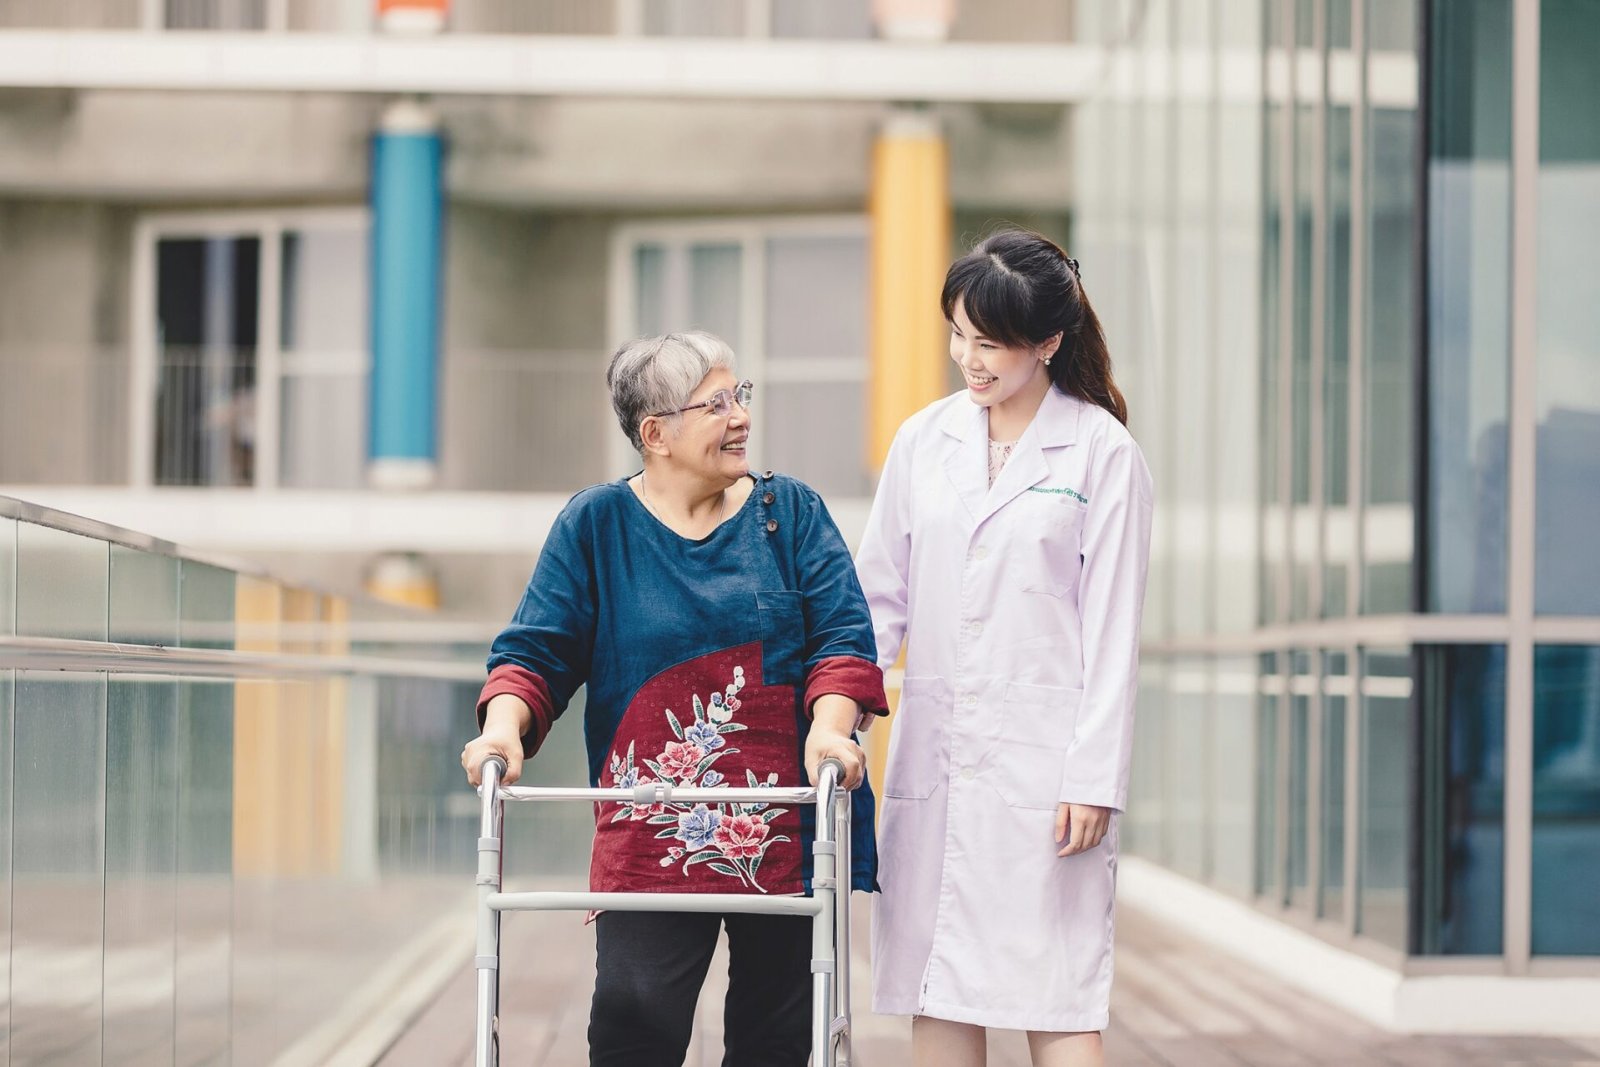 คณะแพทย์ศิริราช ชูโมเดลดูแลผู้ป่วยสูงวัยแบบ Transitional care เพื่อคุณภาพชีวิตที่ดีอย่างยั่งยืน